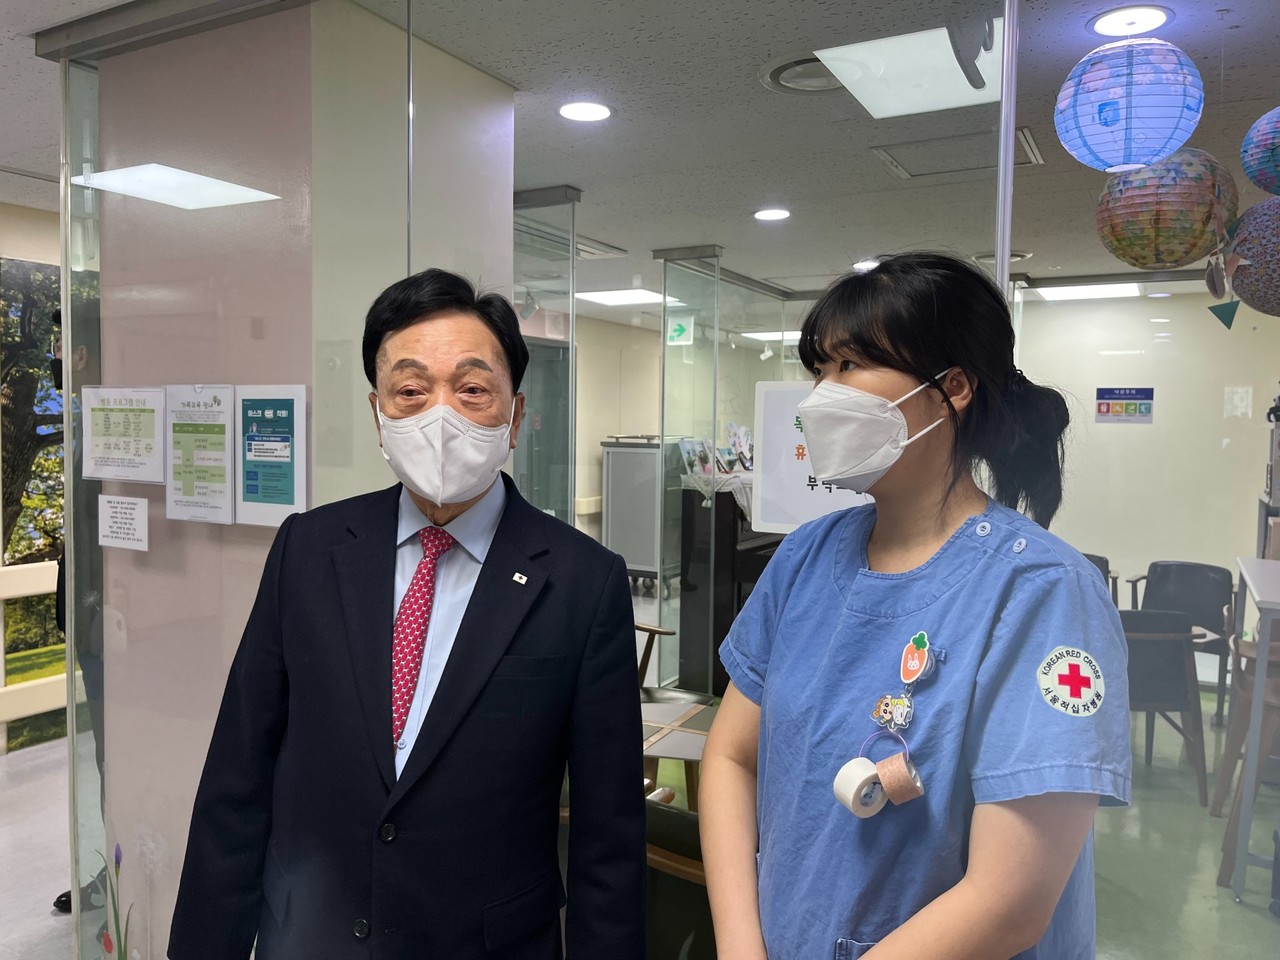 24일(토), 김철수 대한적십자사 회장이 서울적십자병원을 방문하여 의료위기 대응 현황을 점검하고 있다.